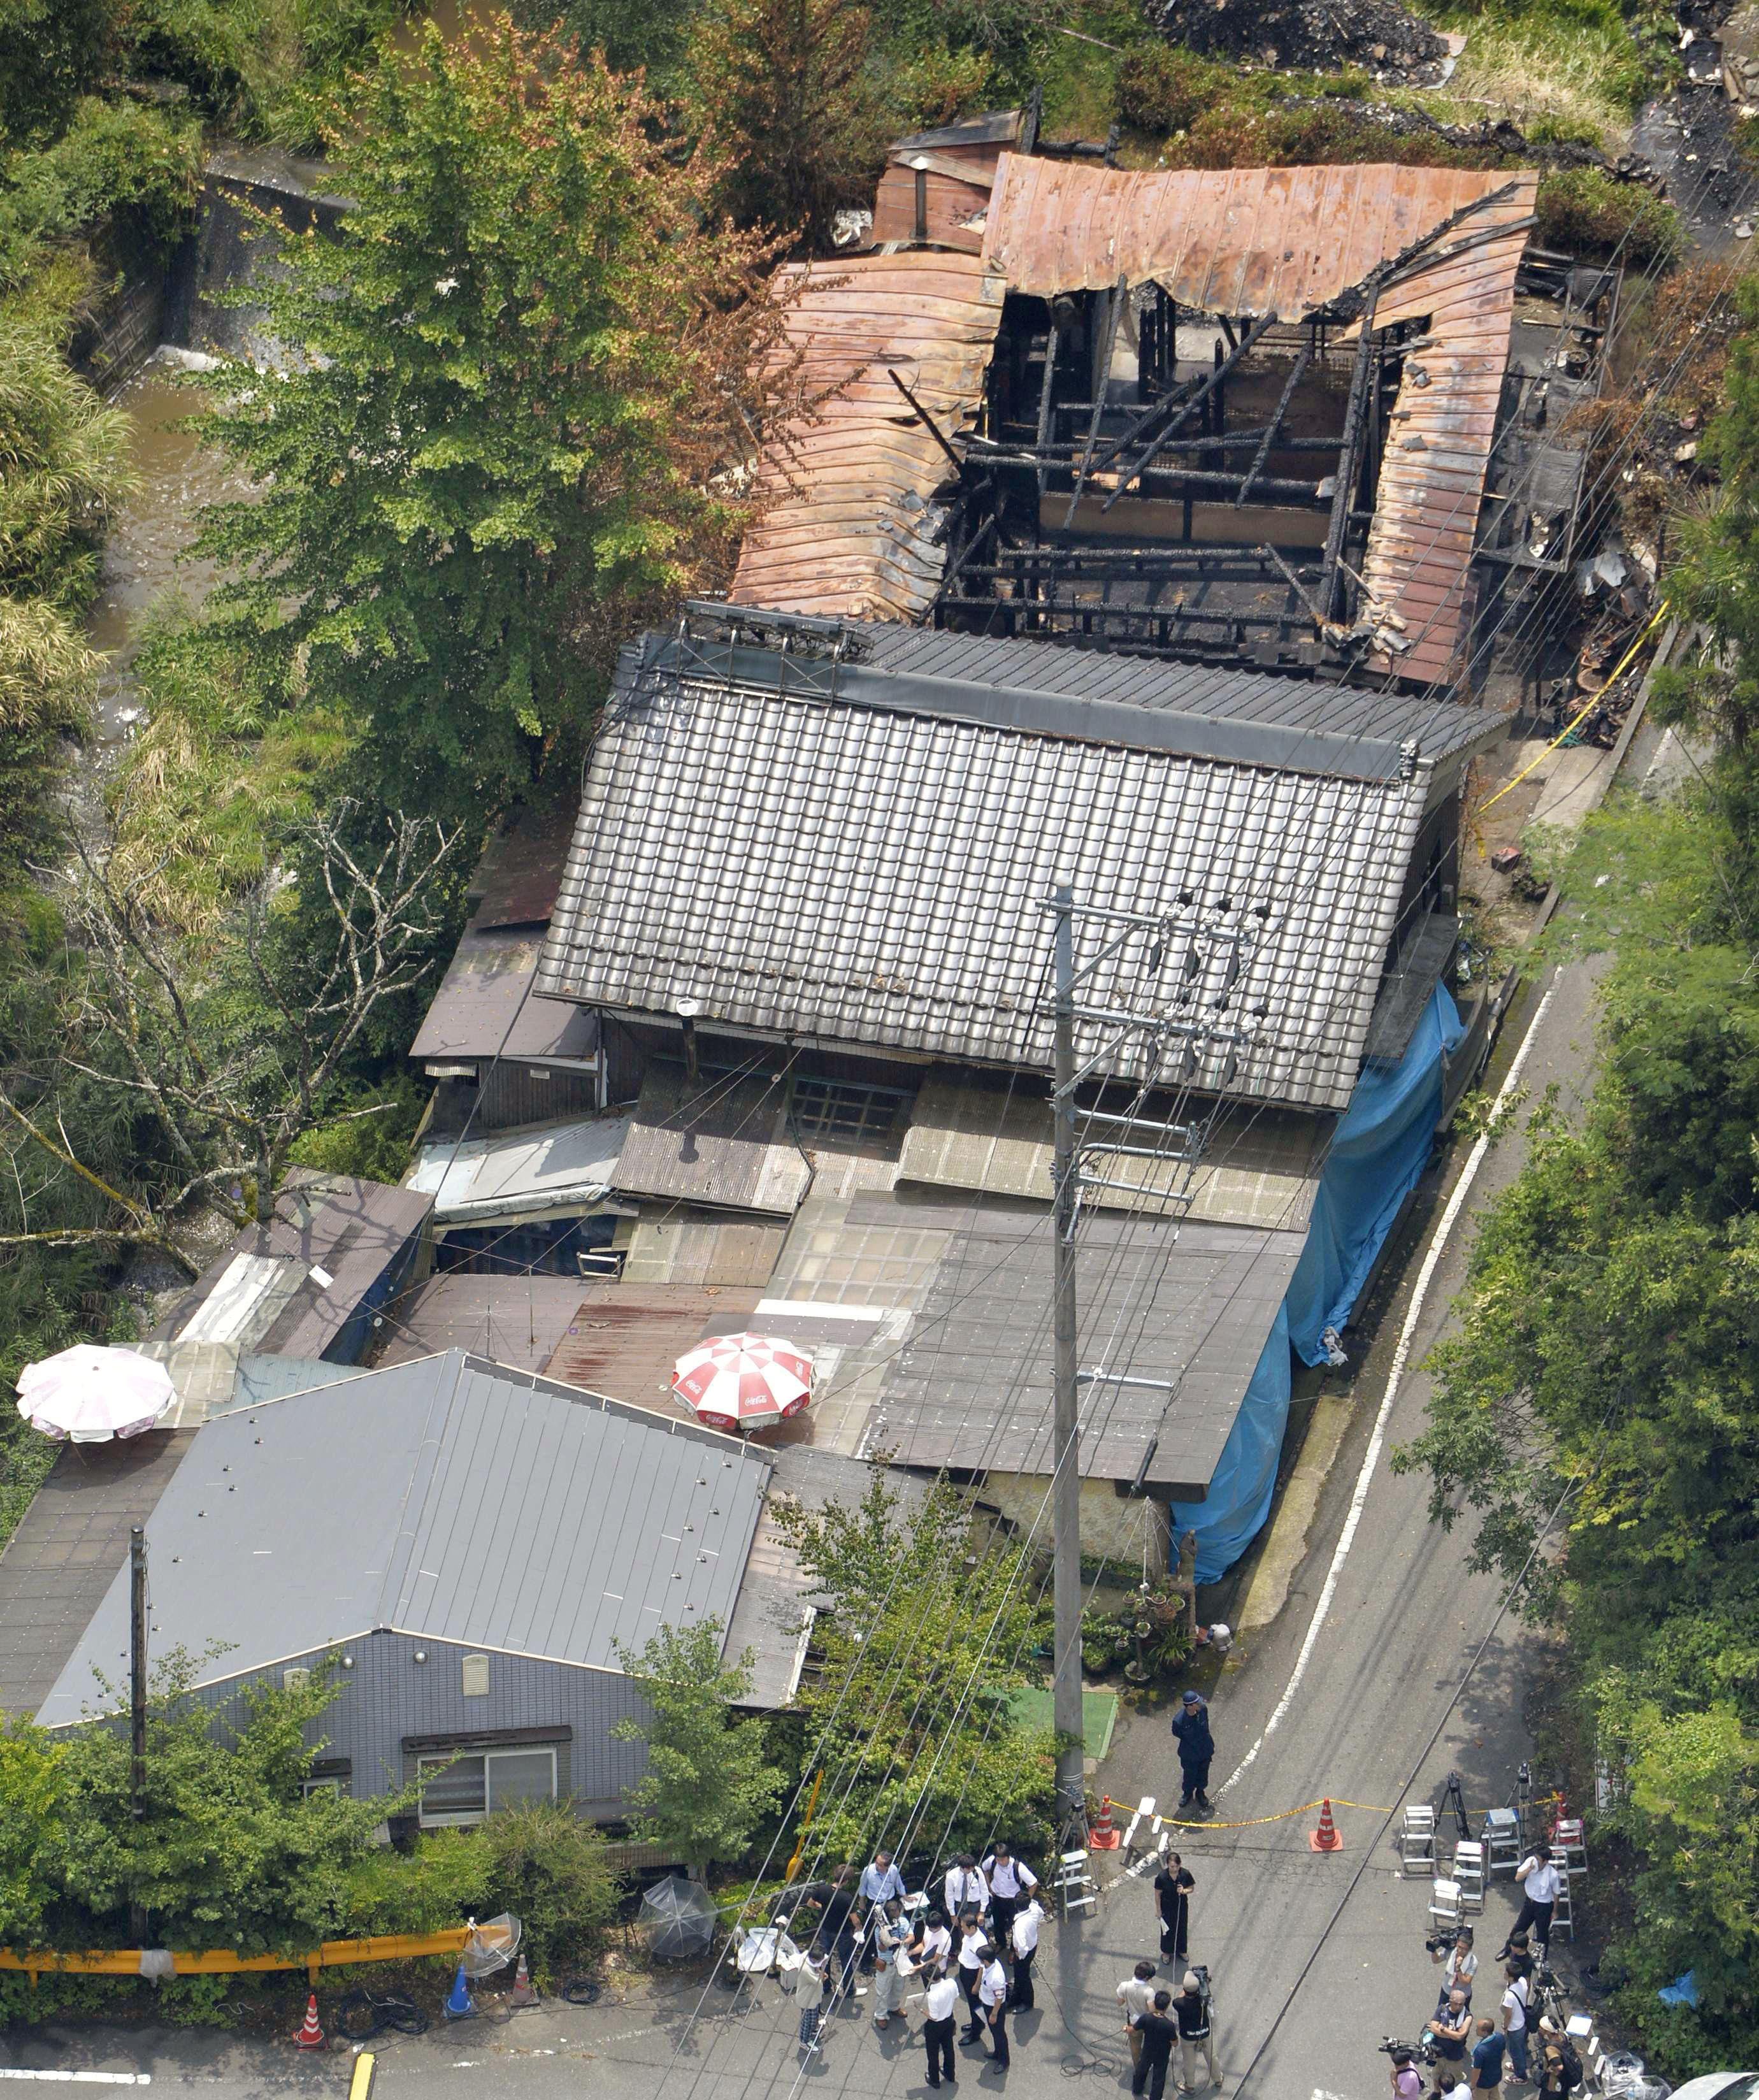 Na foto: Vista aérea da aldeia de Mitake mostra uma das casas incendiadas. Créditos: Japan Times.